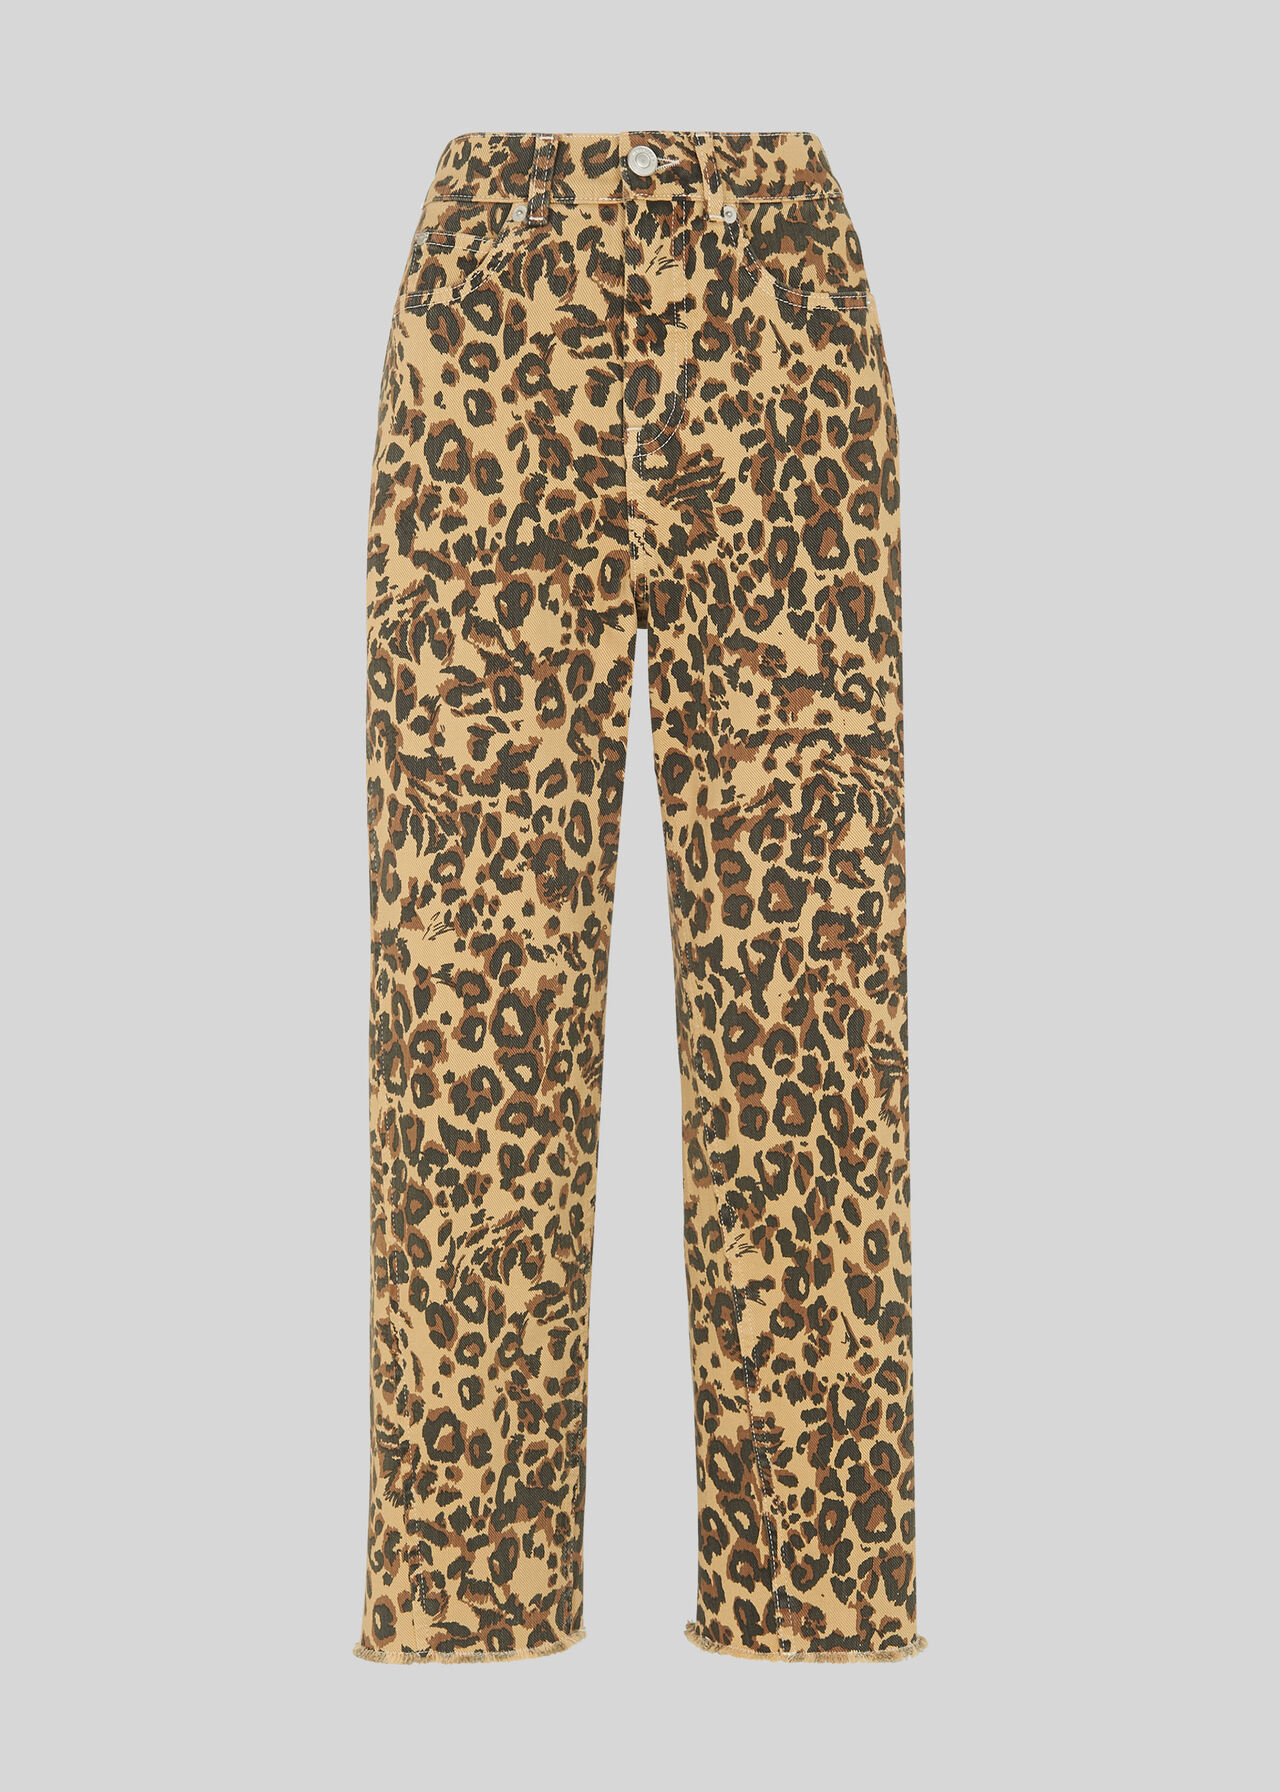 Leopard Print Leopard Spot Poplin Trouser, WHISTLES